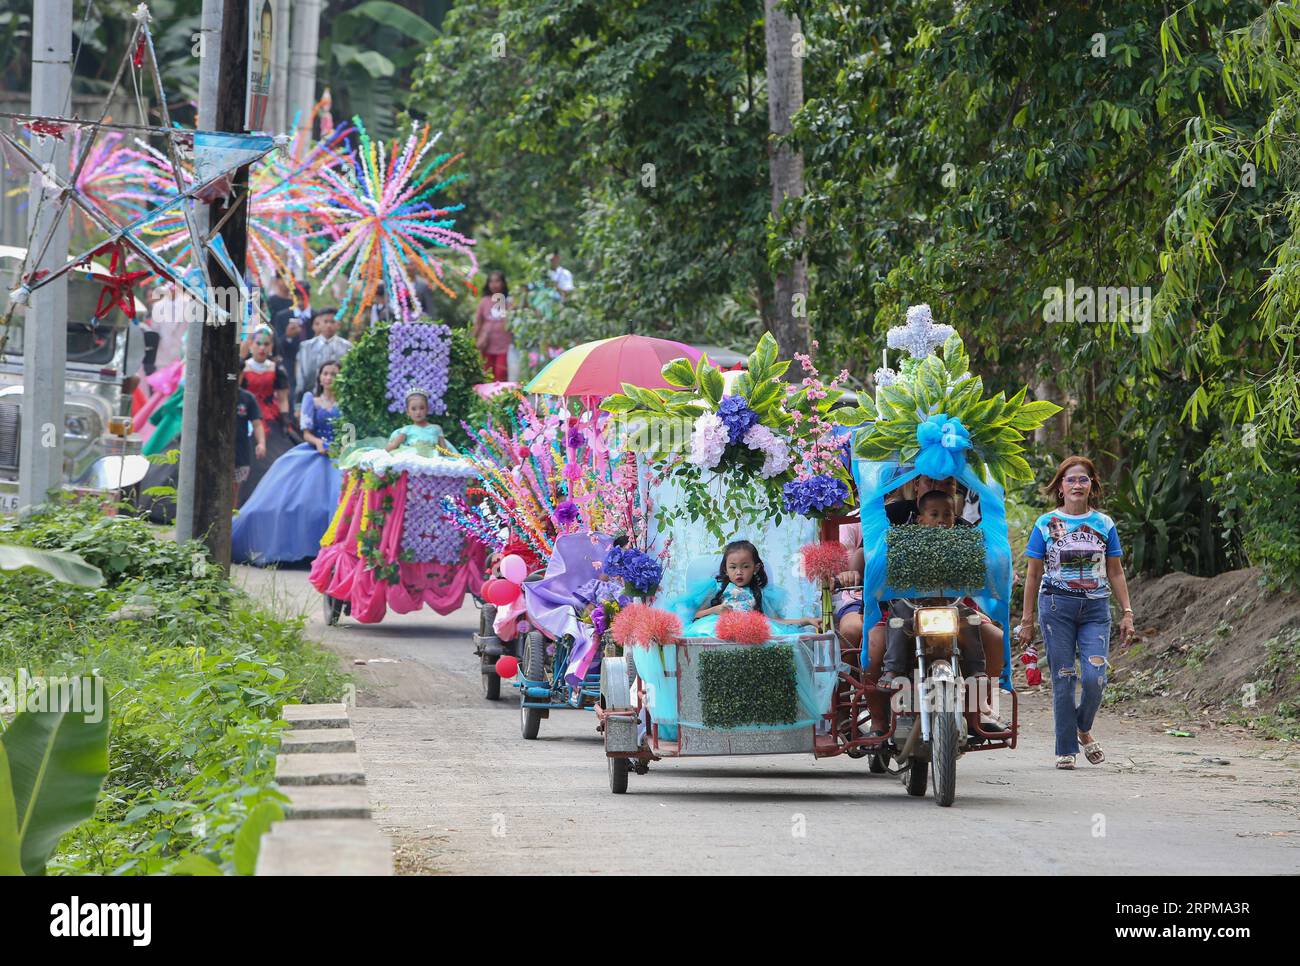 Kinder, die in einem dekorierten Dreirad zum religiös-historischen Schönheitswettbewerb Flores de Mayo, zur rituellen Kulturparade Santacruzan und zum philippinischen Festival paraden Stockfoto